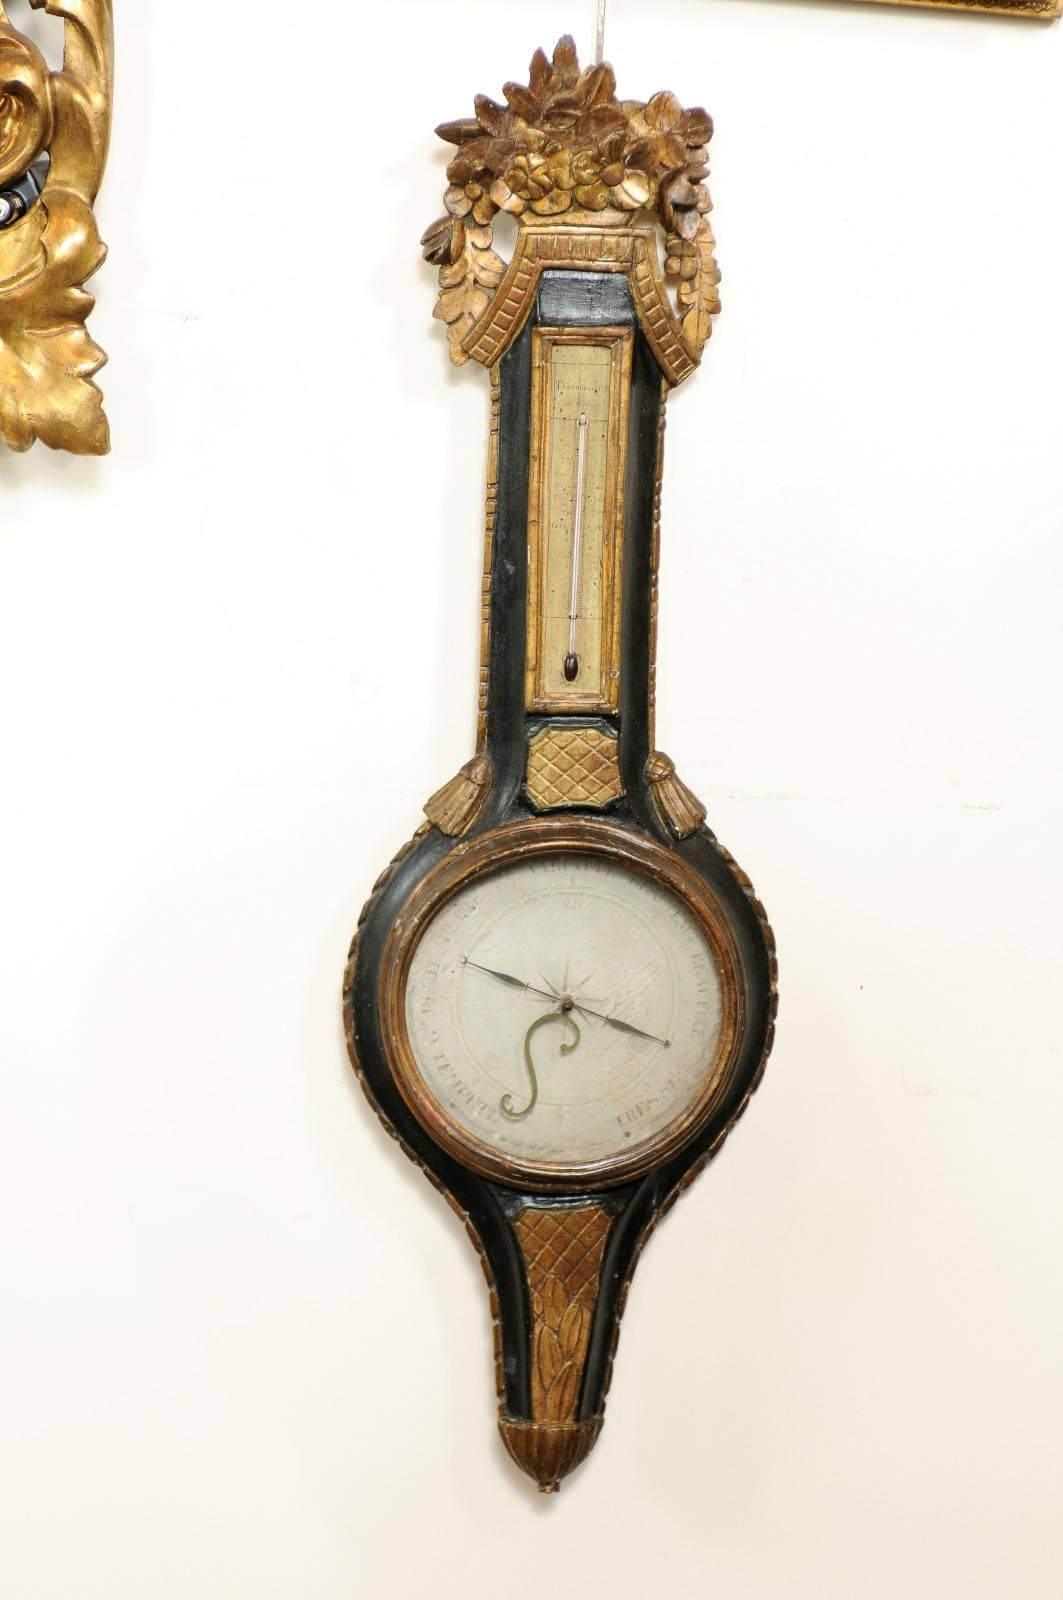 Dieses Barometer und Thermometer im französischen Louis XVI-Stil besitzt eine exquisite geschnitzte Goldholzkrone mit zarten Blattwerkmotiven. Unter dem Wappen befindet sich das Thermometer, das von einem schwarz lackierten Gehäuse umgeben ist, auf